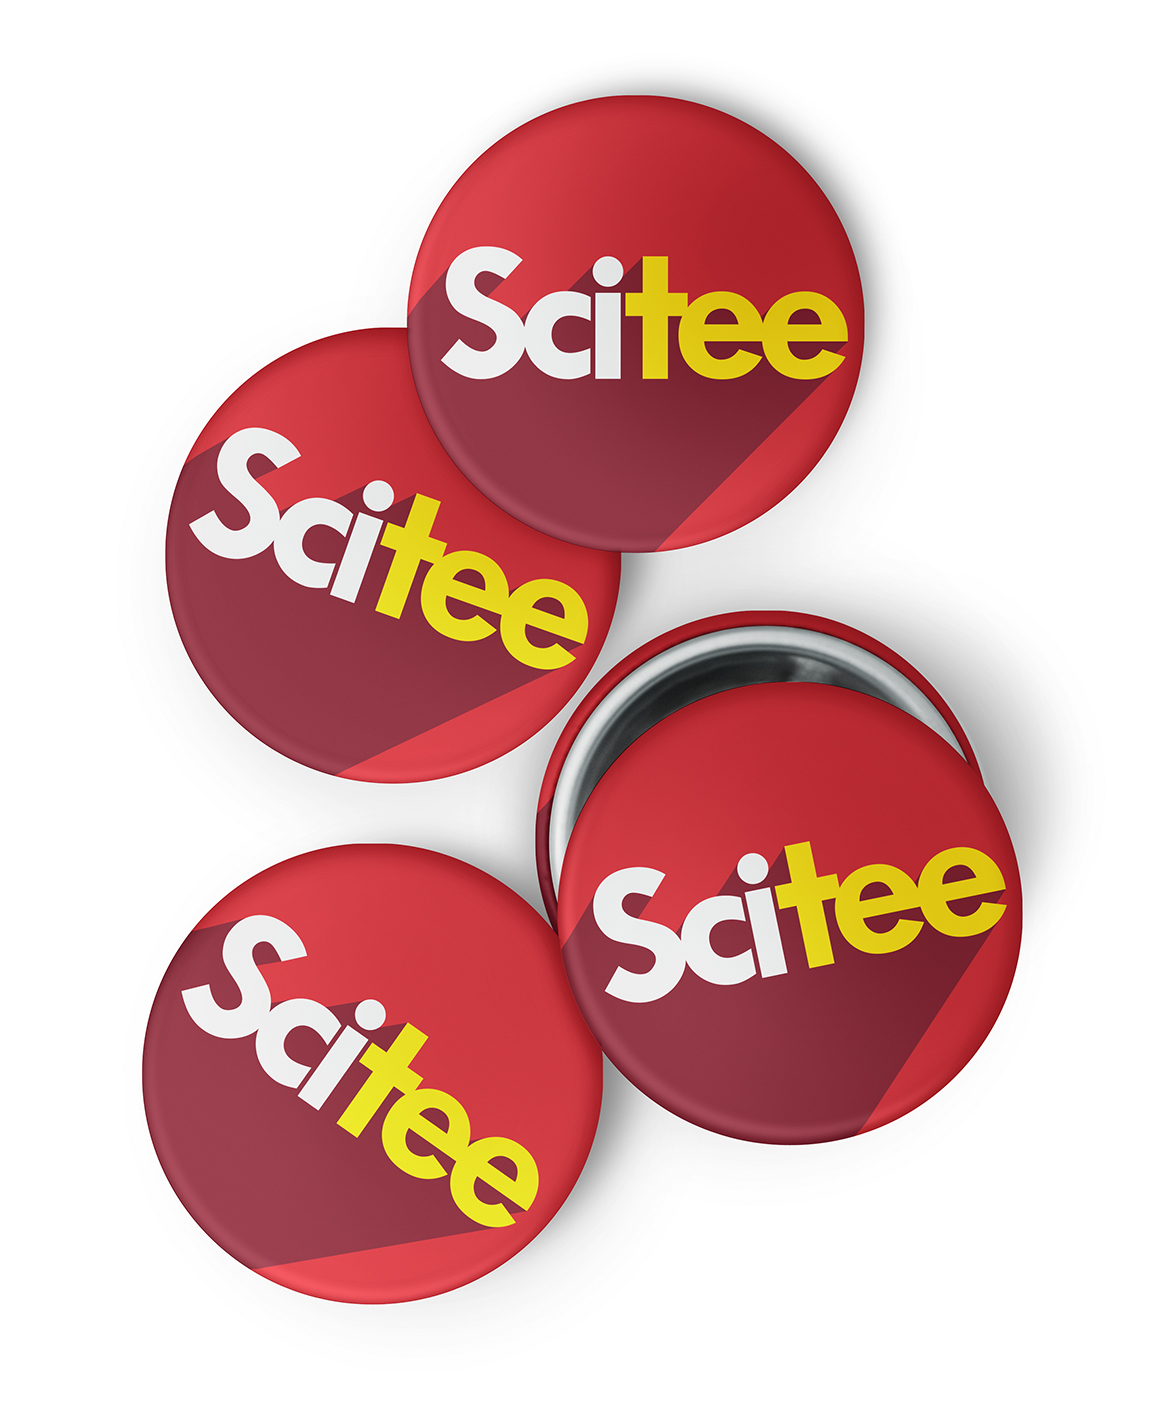 SciTee Logo on Badge